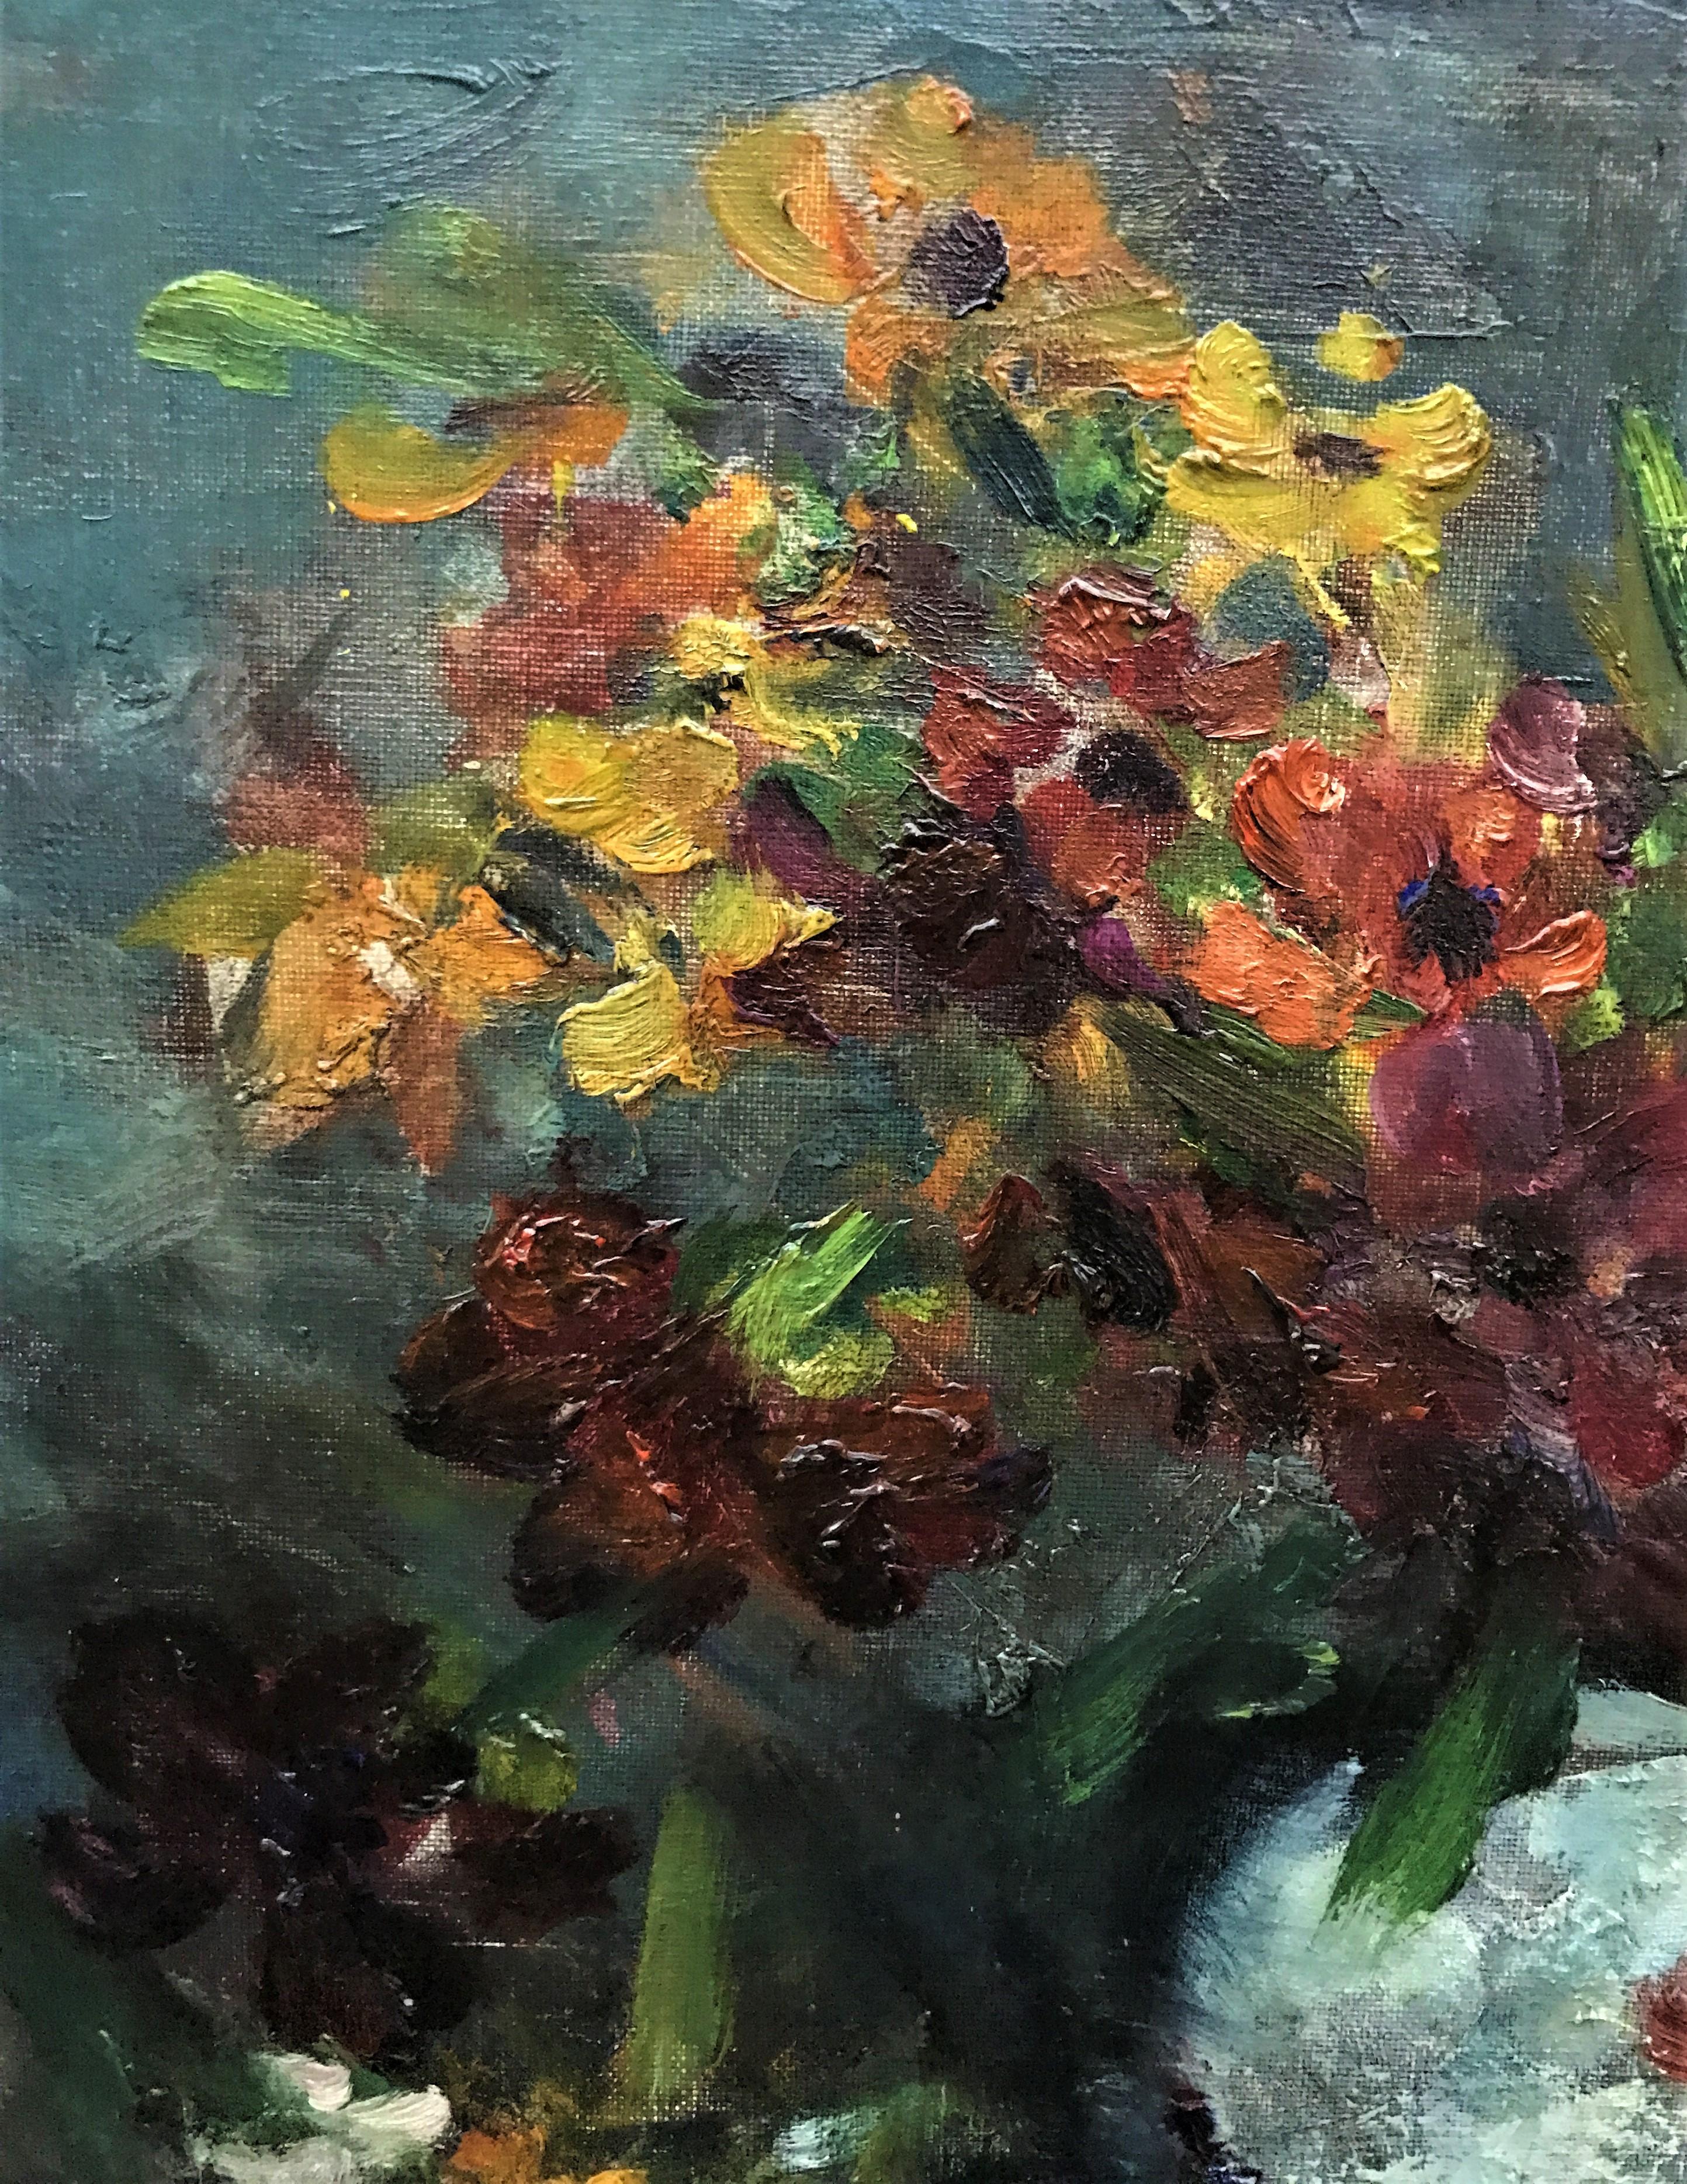 Il s'agit d'une superbe peinture de nature morte représentant un panier de fleurs. Cette huile sur toile originale datant du 20e siècle est une œuvre de Victor Simonin.         
Victor Simonin (1877 - 1946), actif et vivant en Belgique, est connu